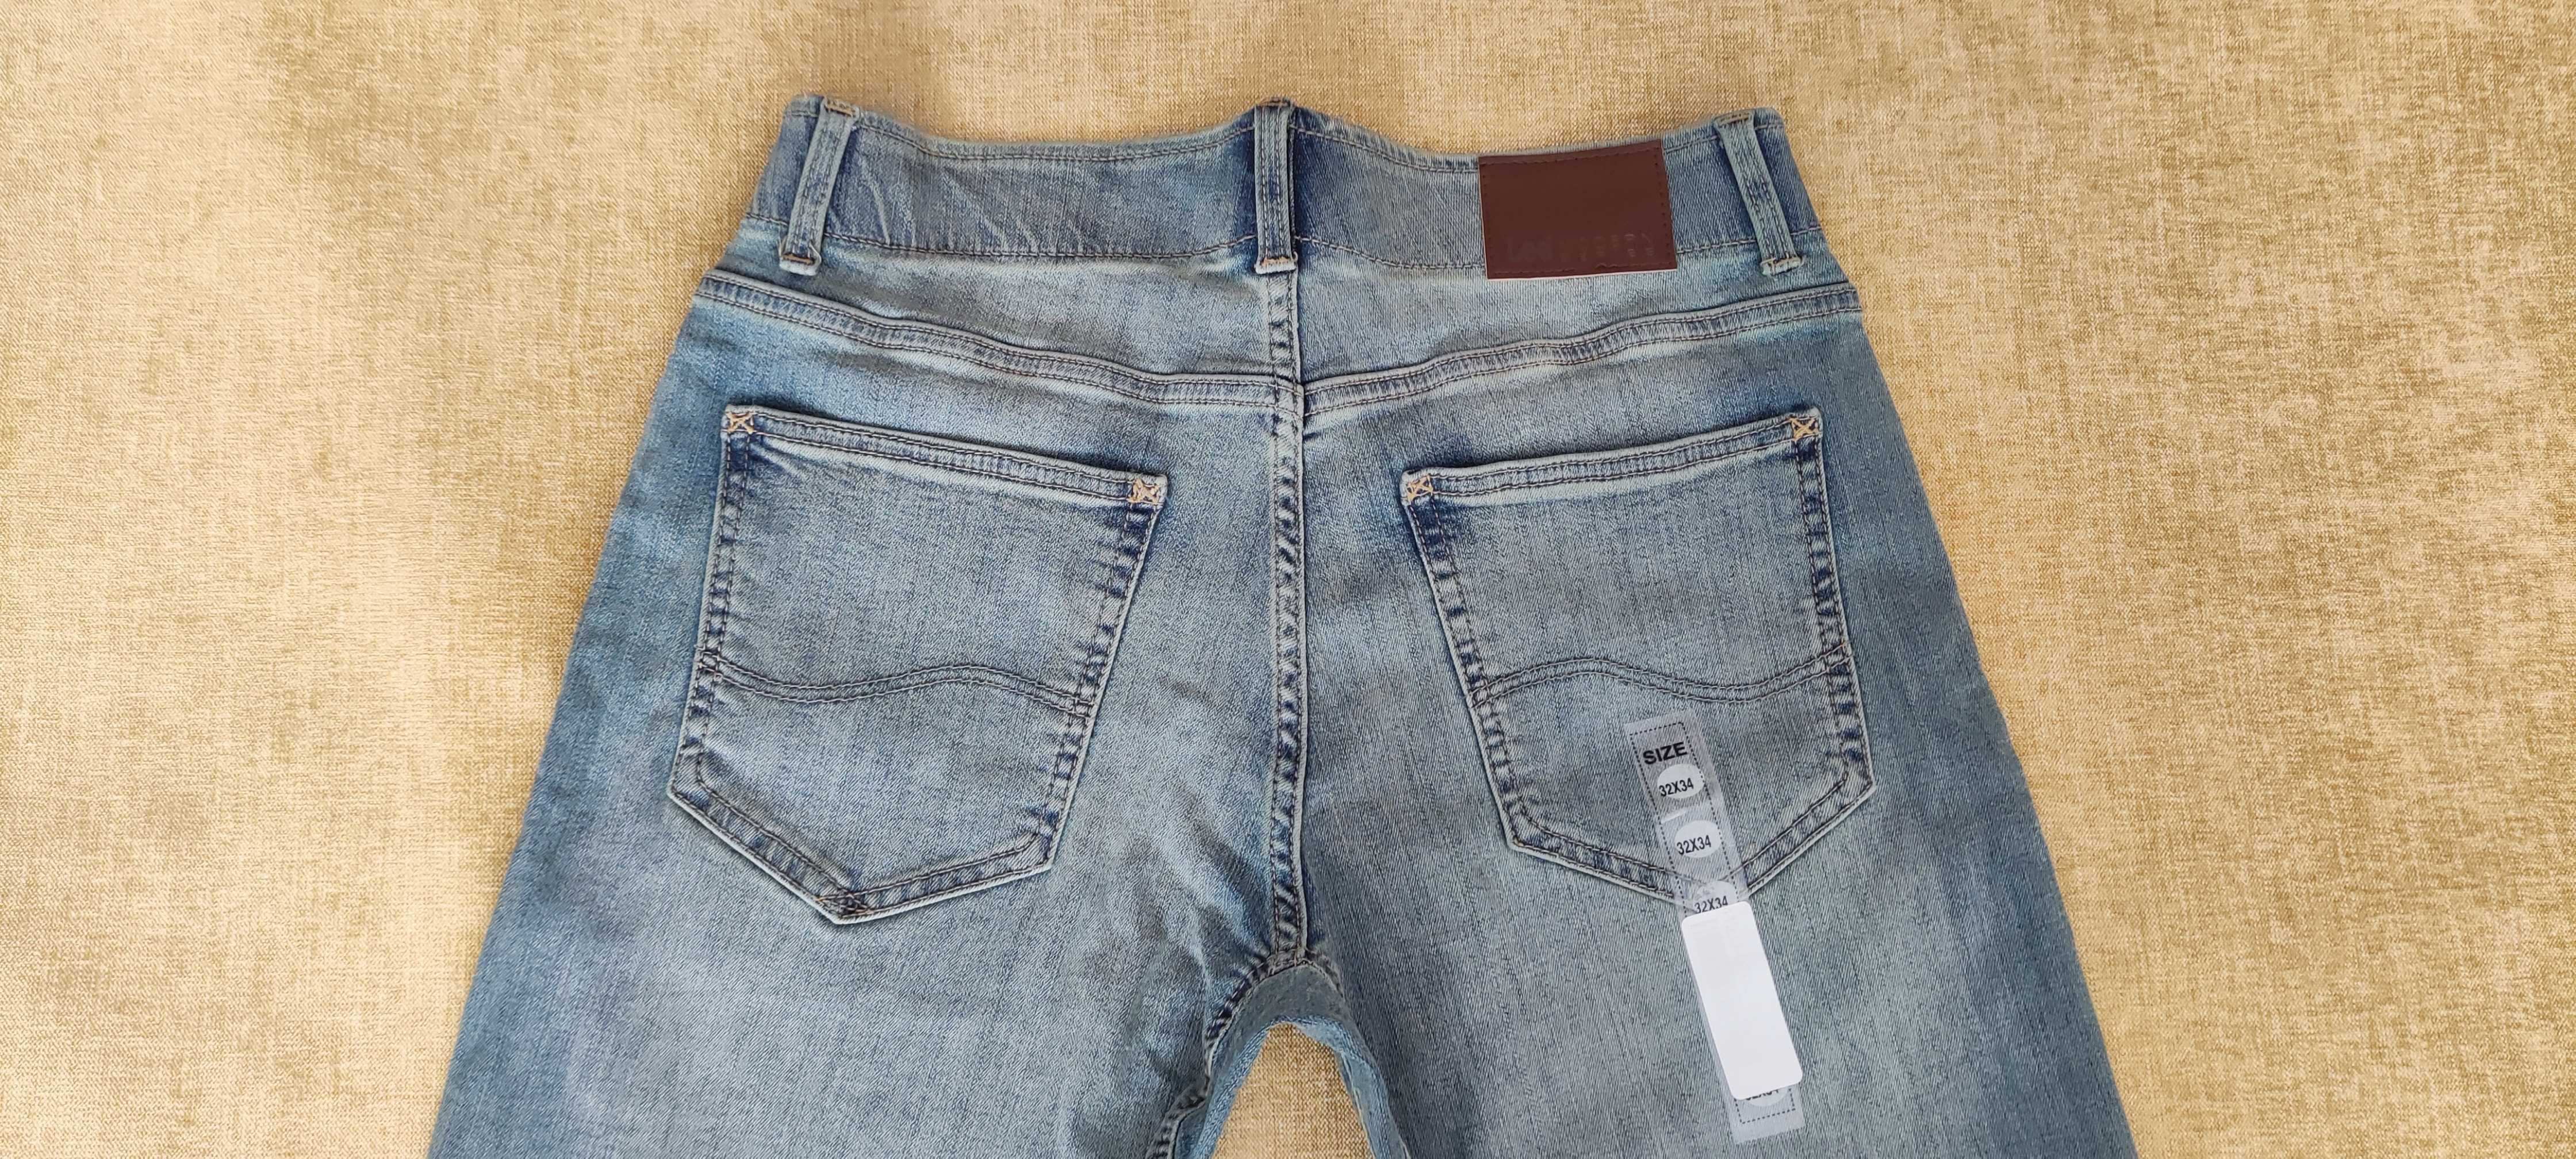 Стретчевые джинсы Lee Extreme Motion W32 L34